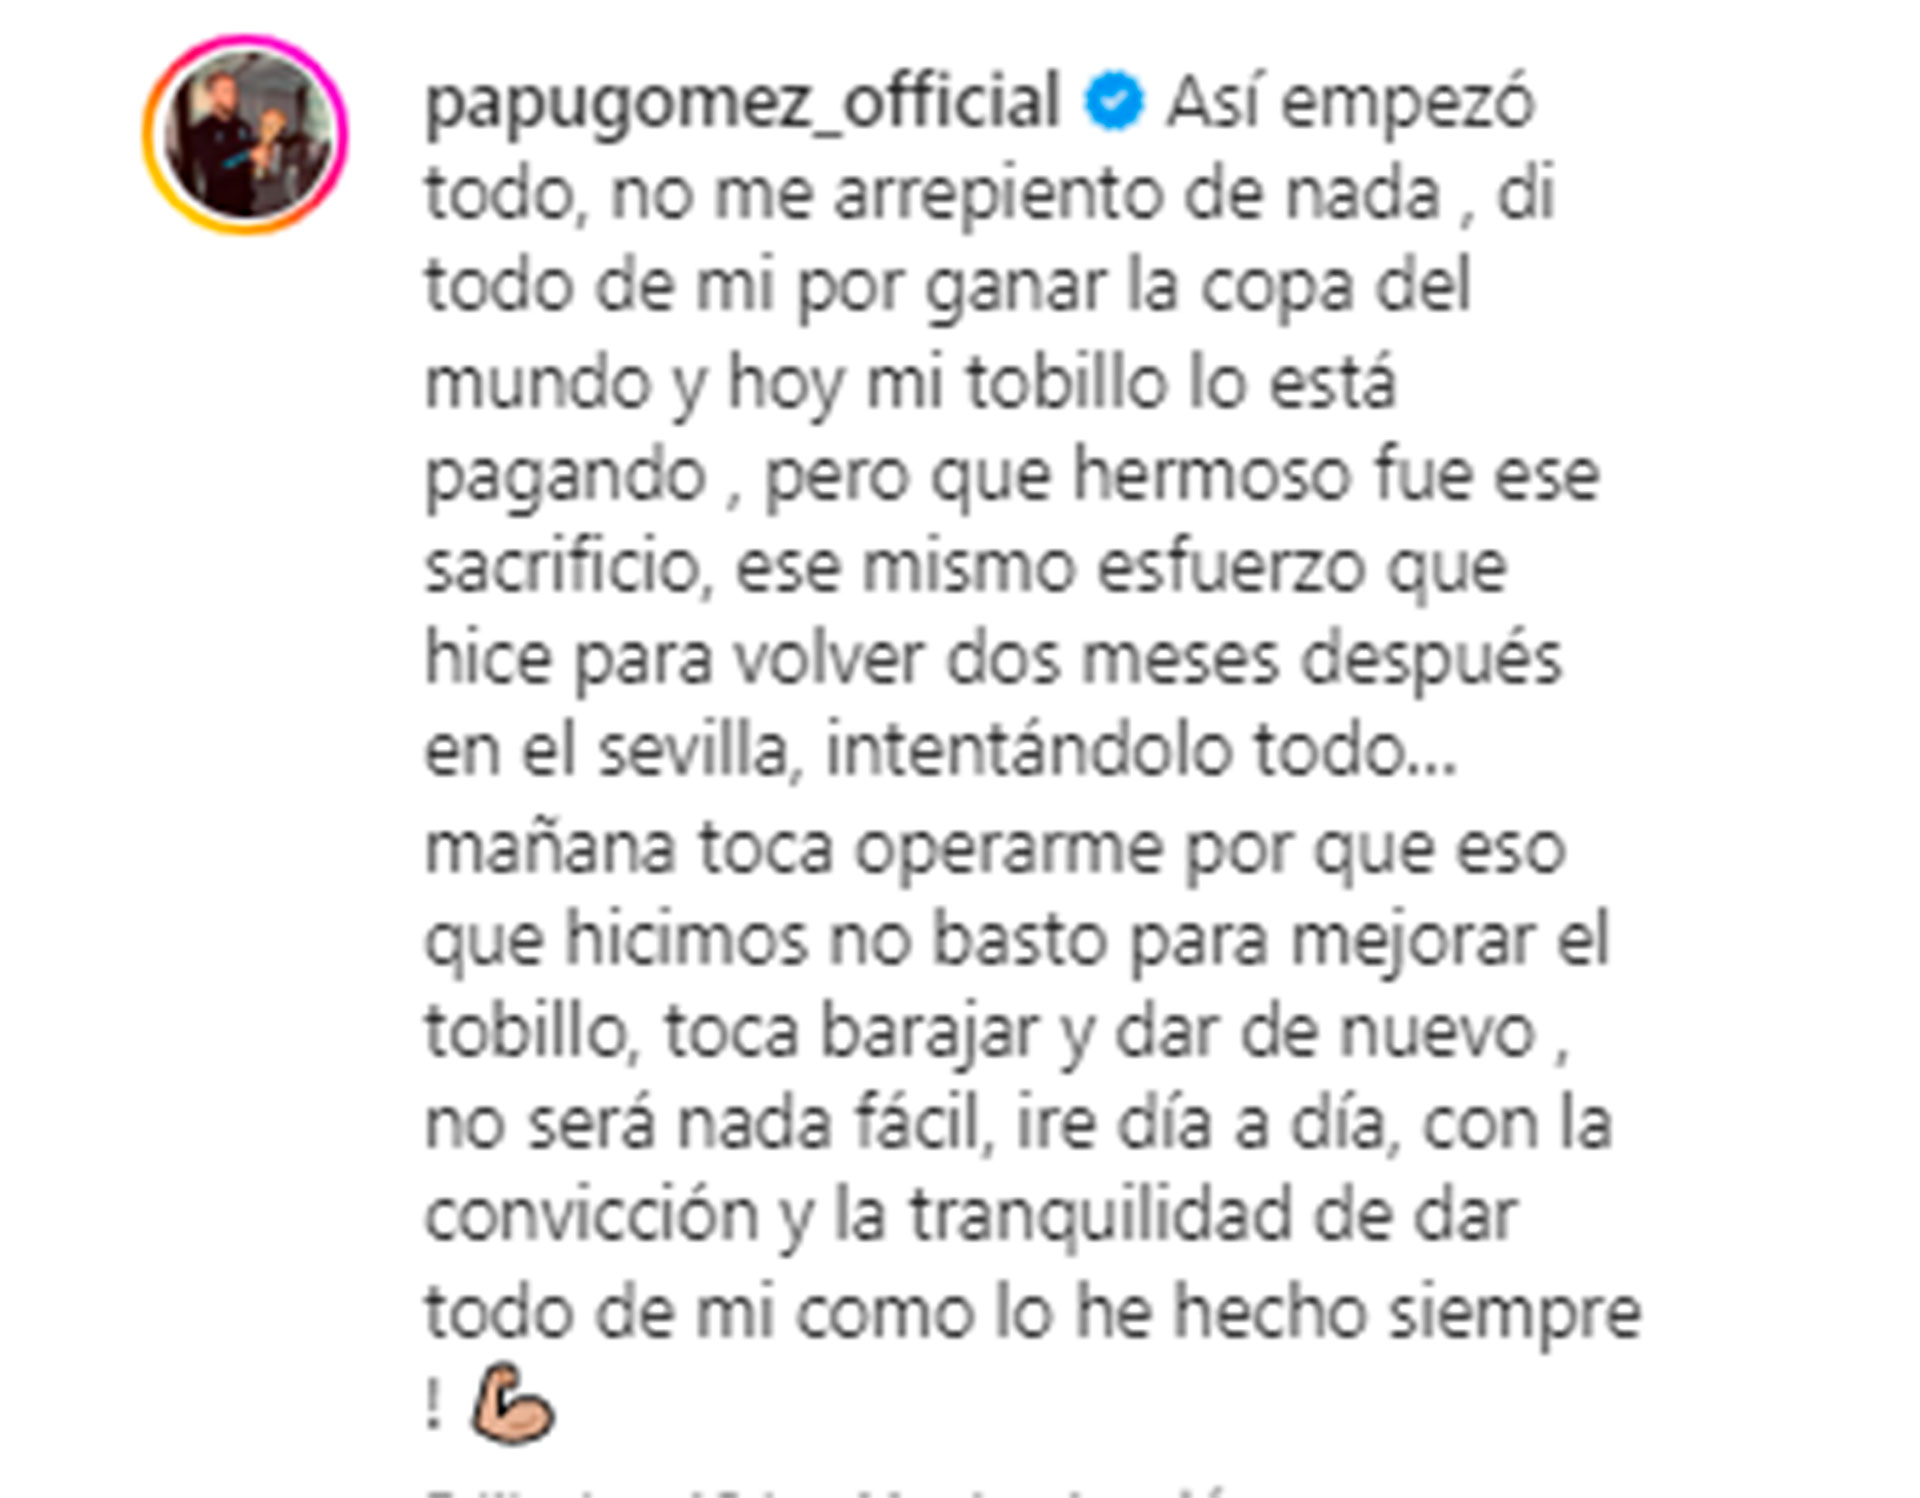 El mensaje del Papu Gómez en sus redes sociales (papugomez_official)